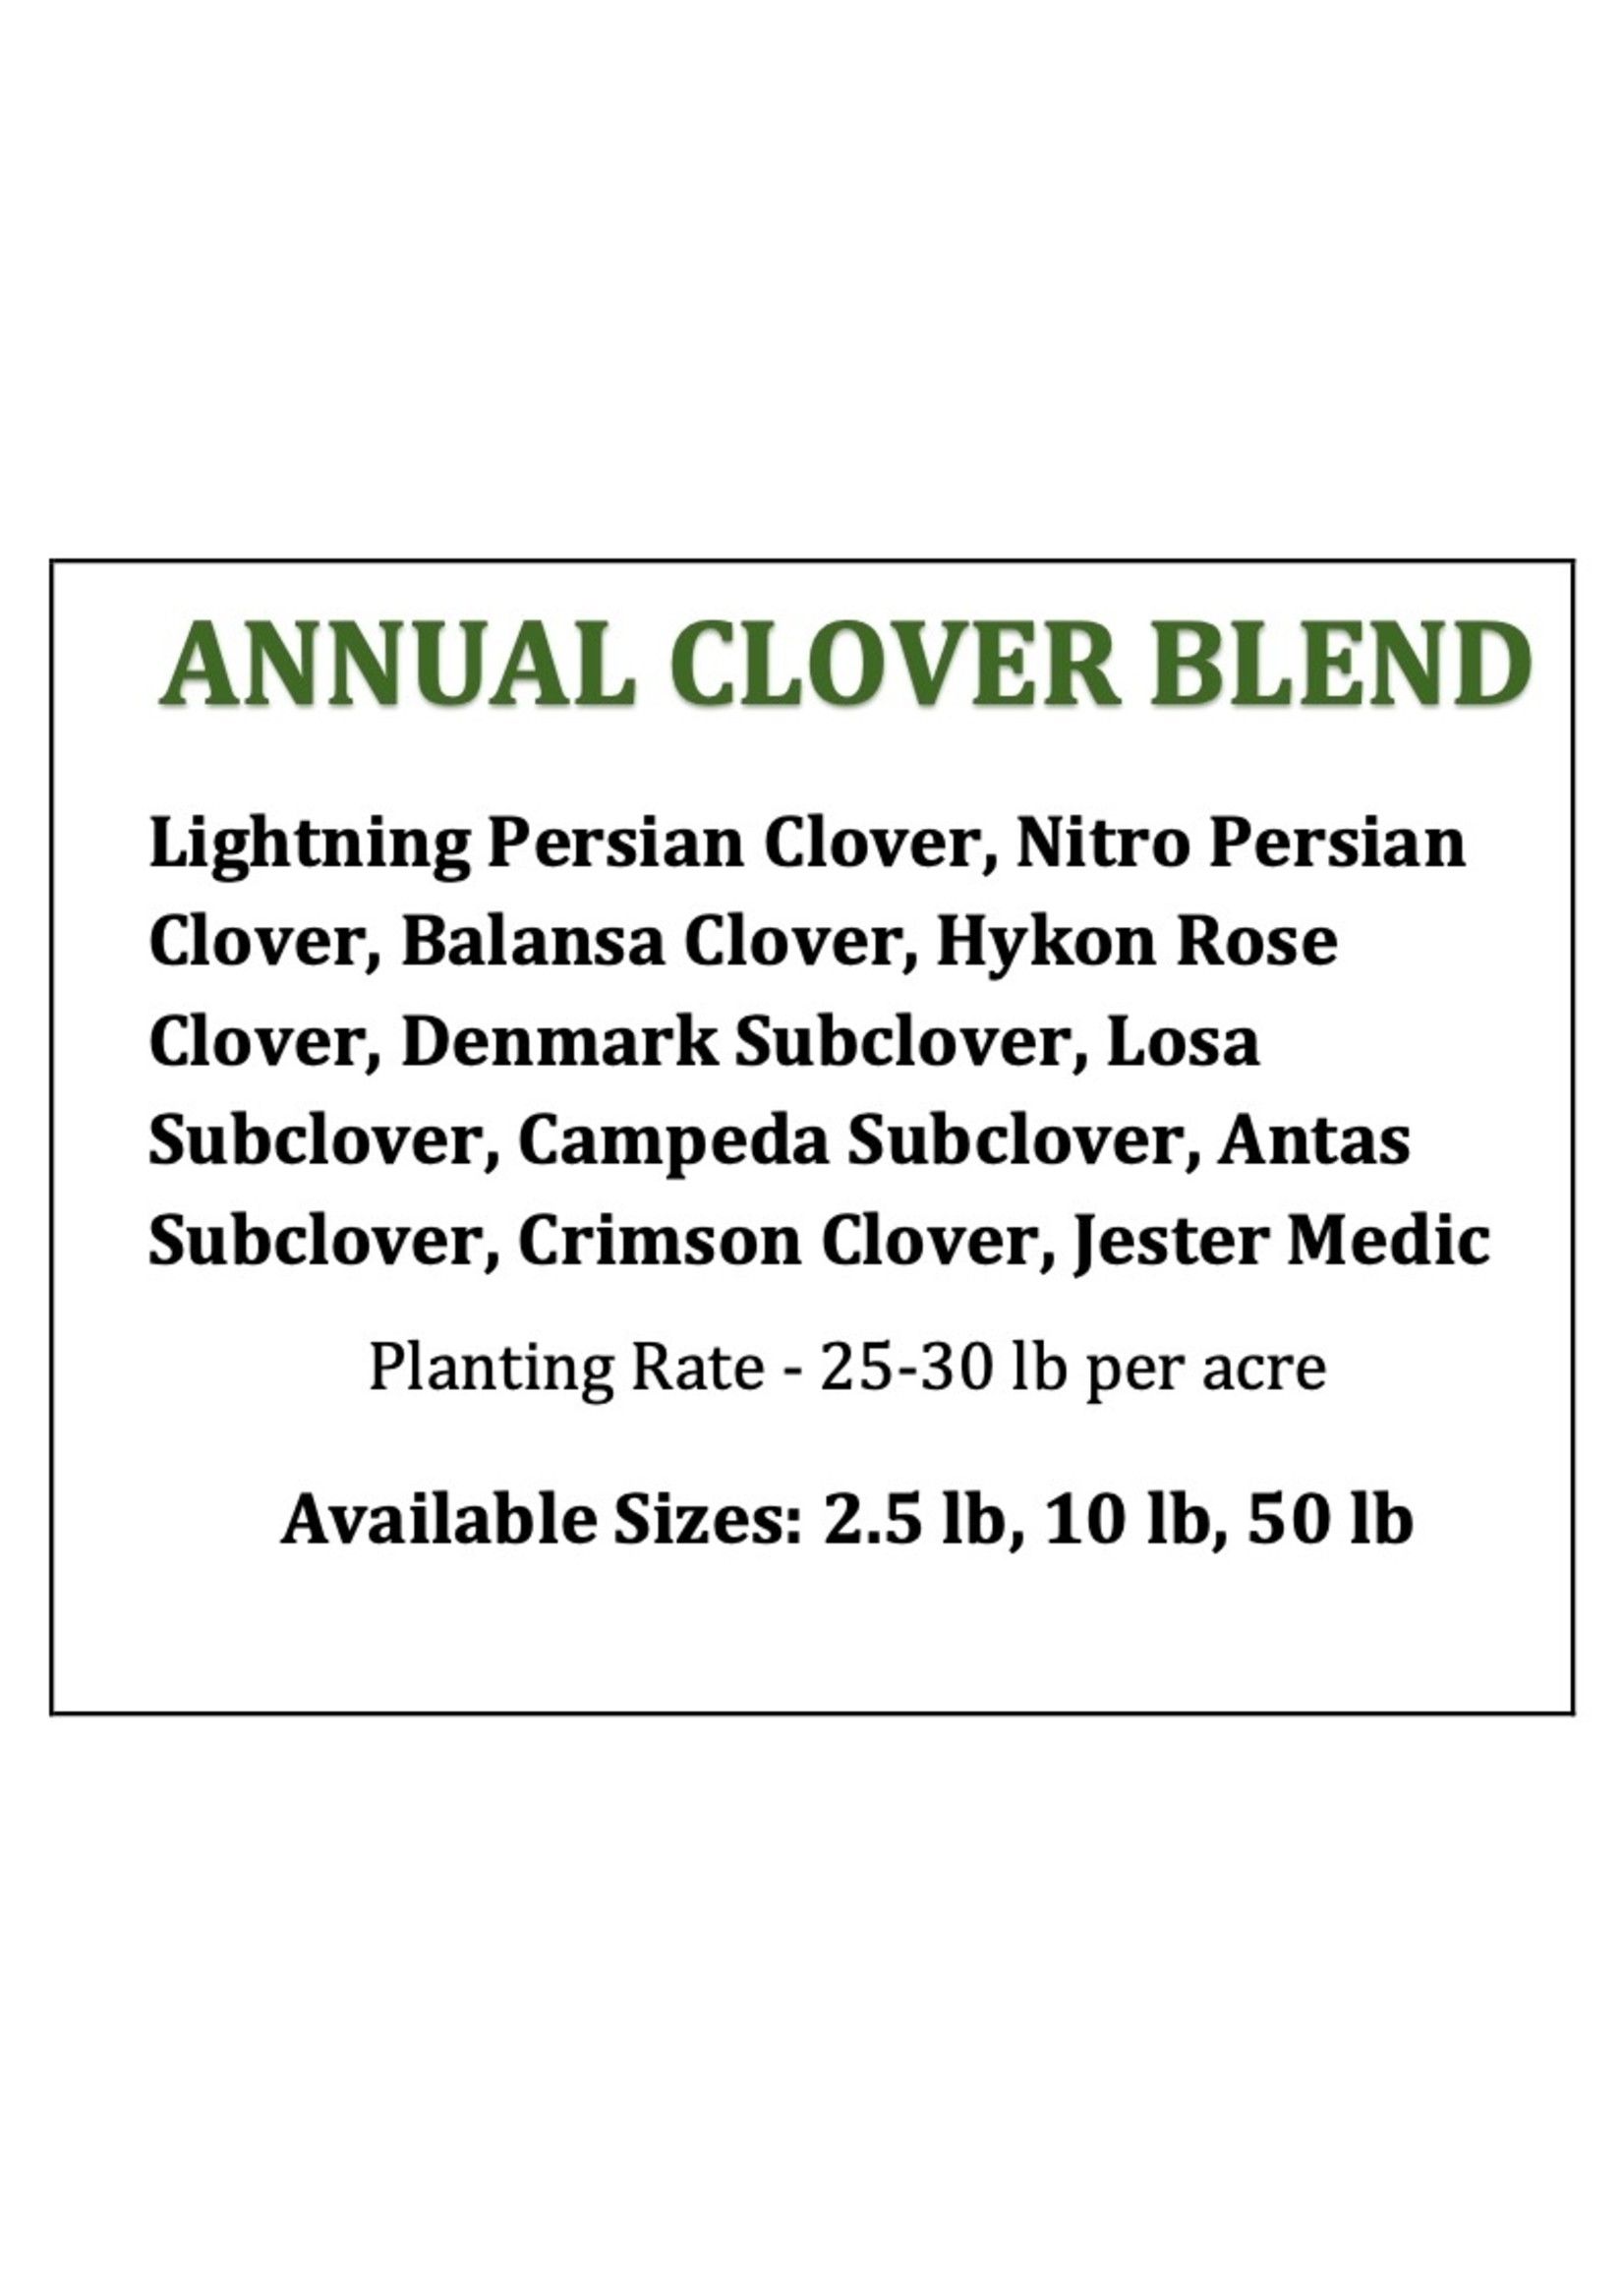 Annual Clover Blend